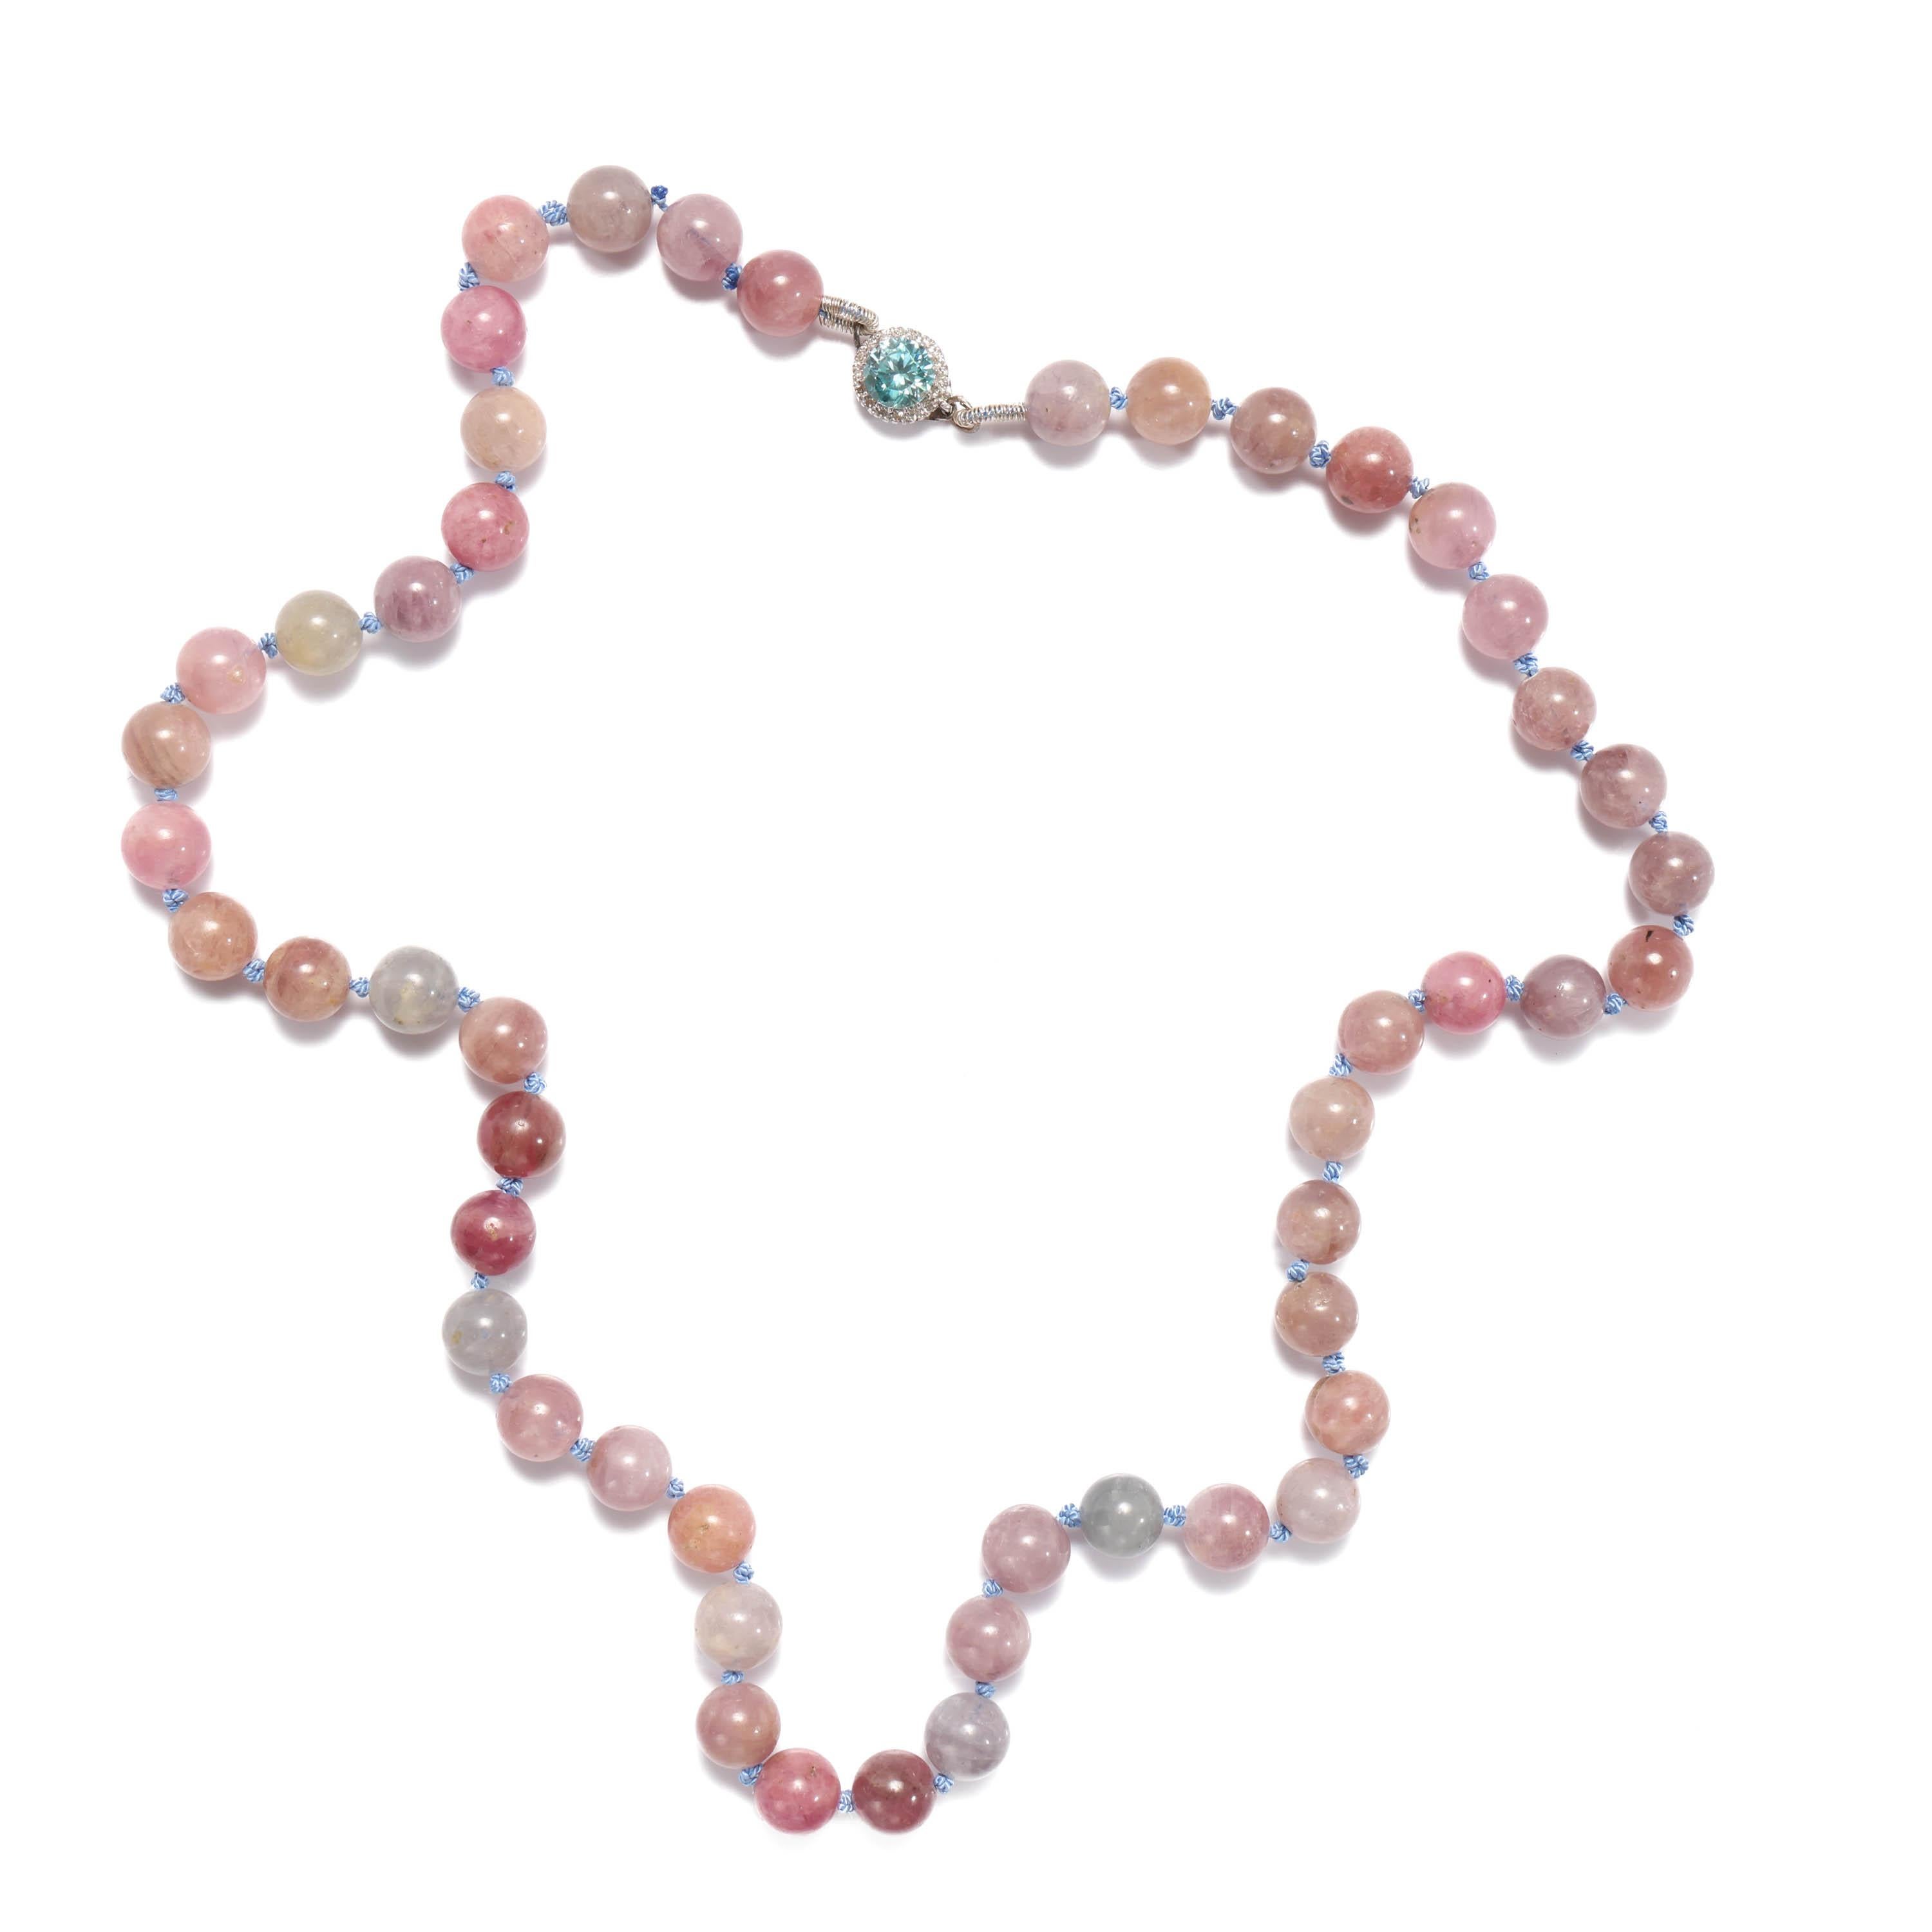 Un collier magnifique et entièrement unique, non porté, composé de 49 perles de spinelles naturelles et certifiées non chauffées, dans des tons doux de rose, gris lavande, violet clair, cuivre doux et rouge framboise. La palette nuancée de ces